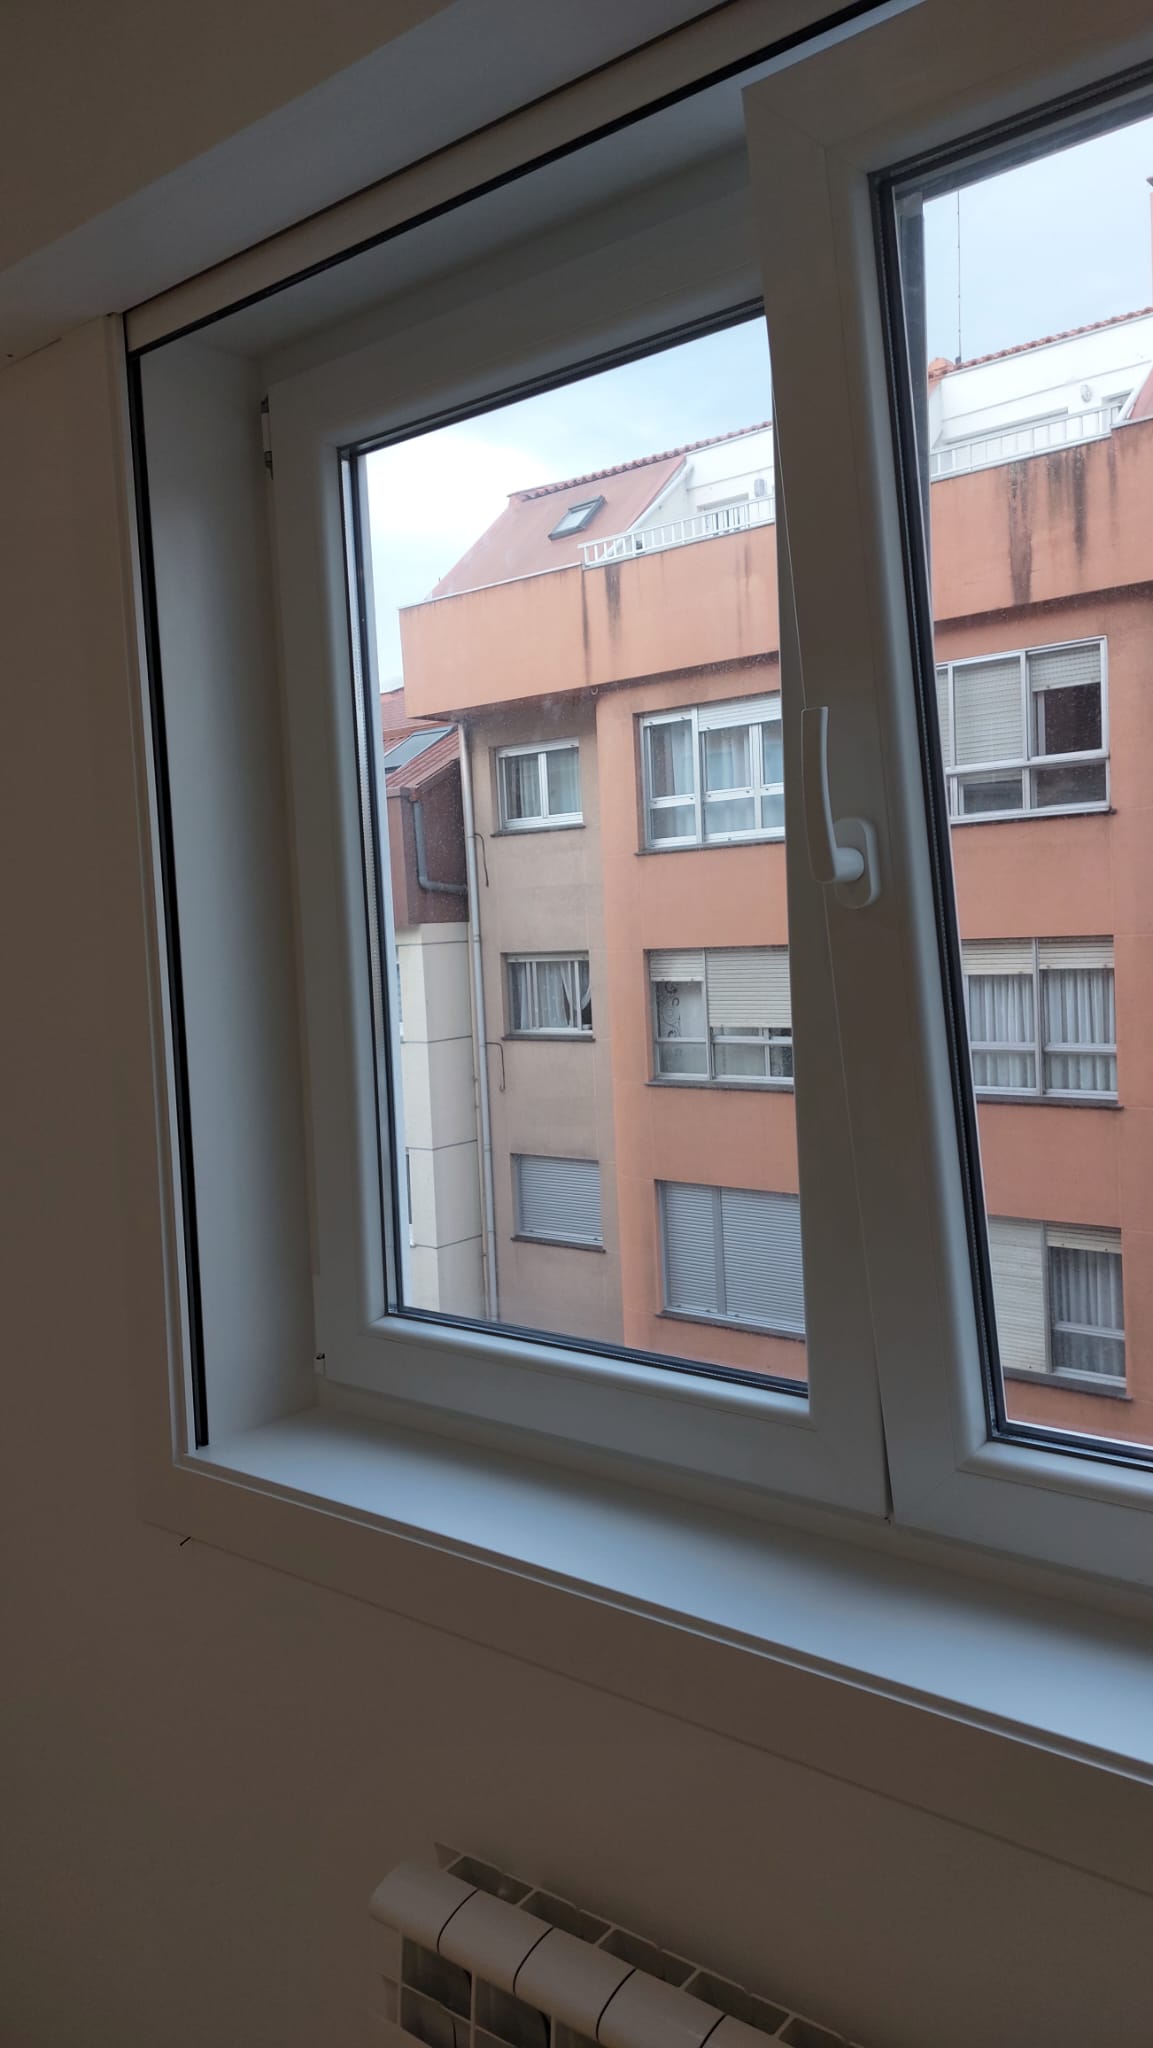 ventanas aluminio climalit Coruña